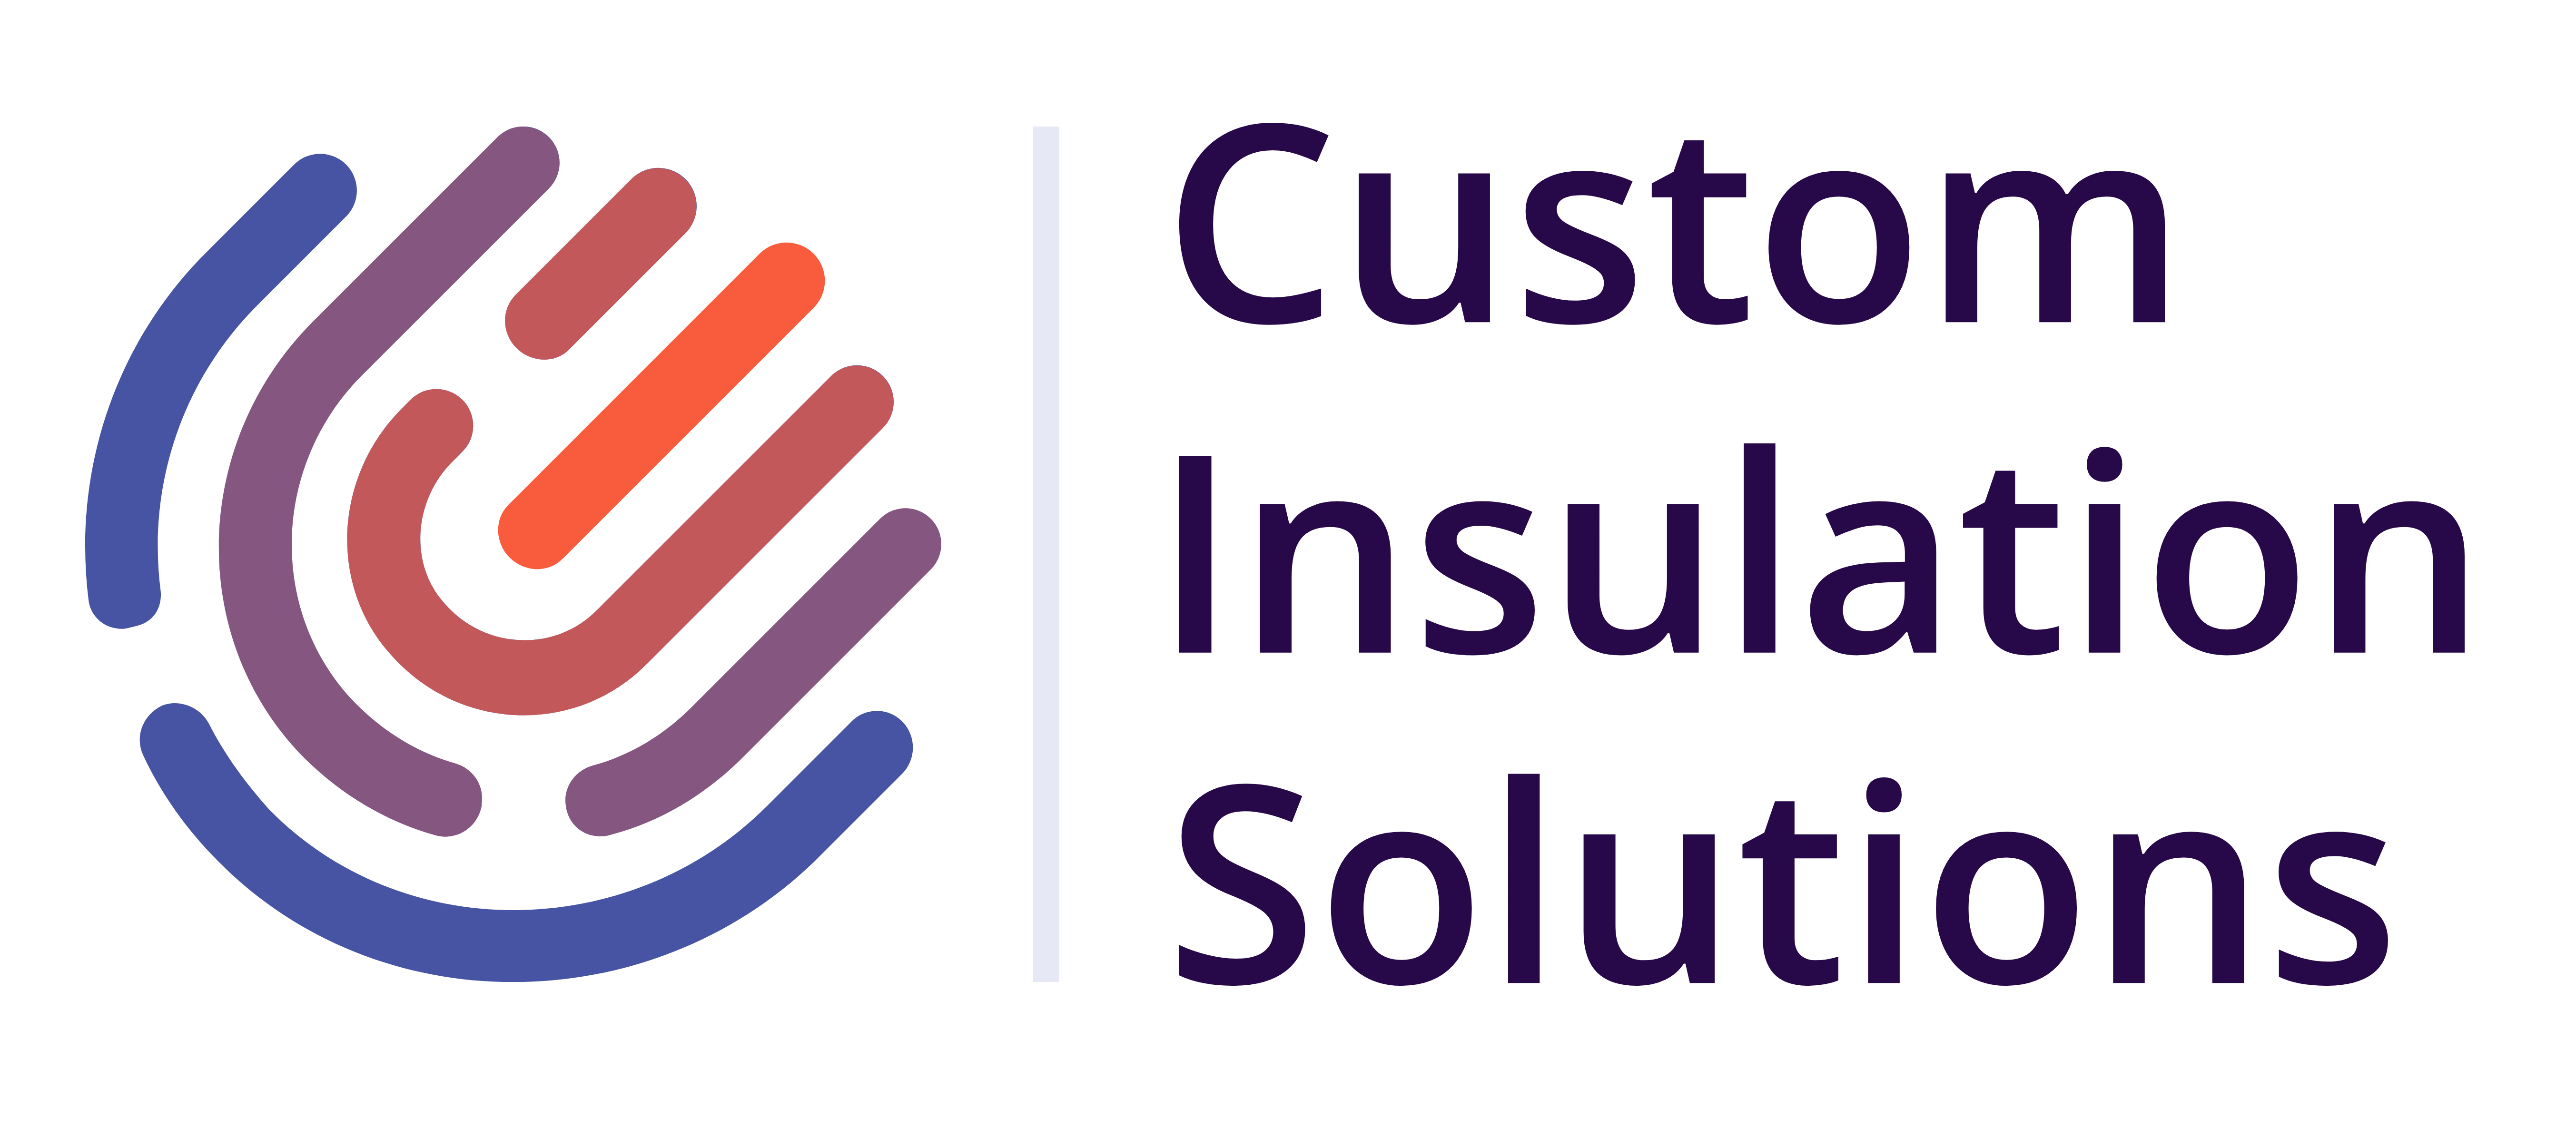 Custom Insulation Solutions Ltd